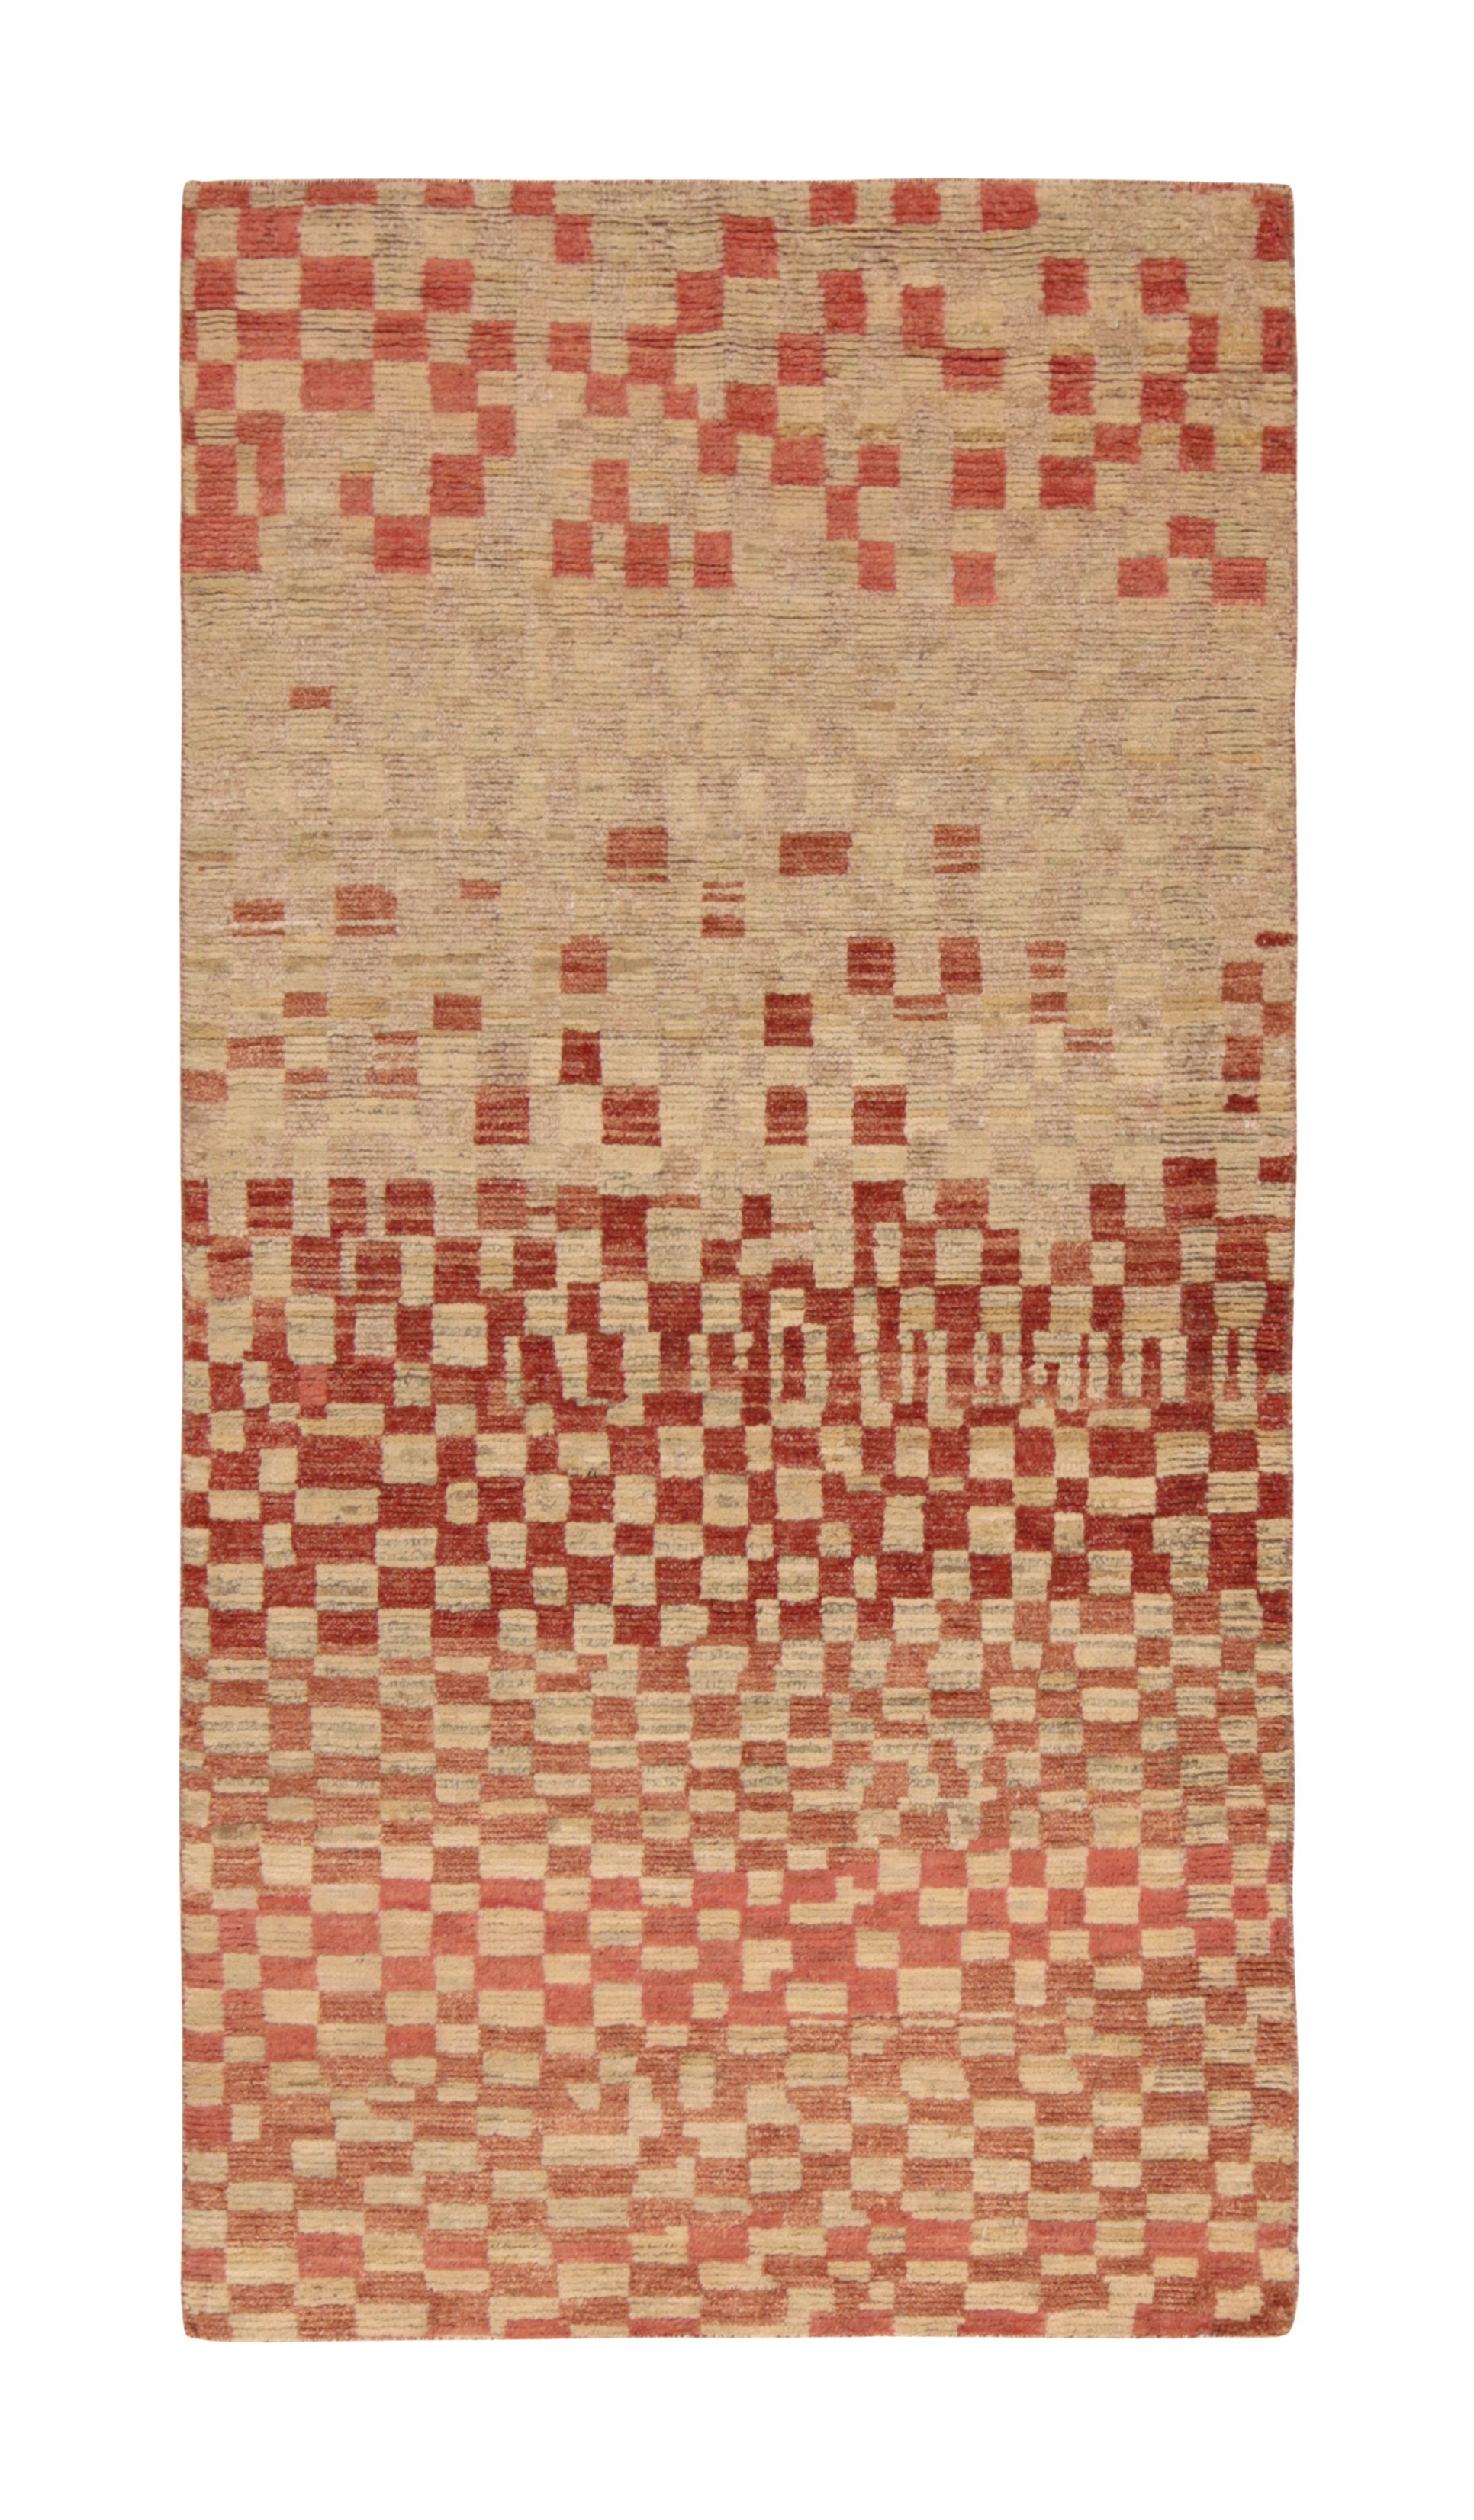 Marokkanischer Teppich von Rug & Kilim in Beige-Braun und Rot mit geometrischem Muster